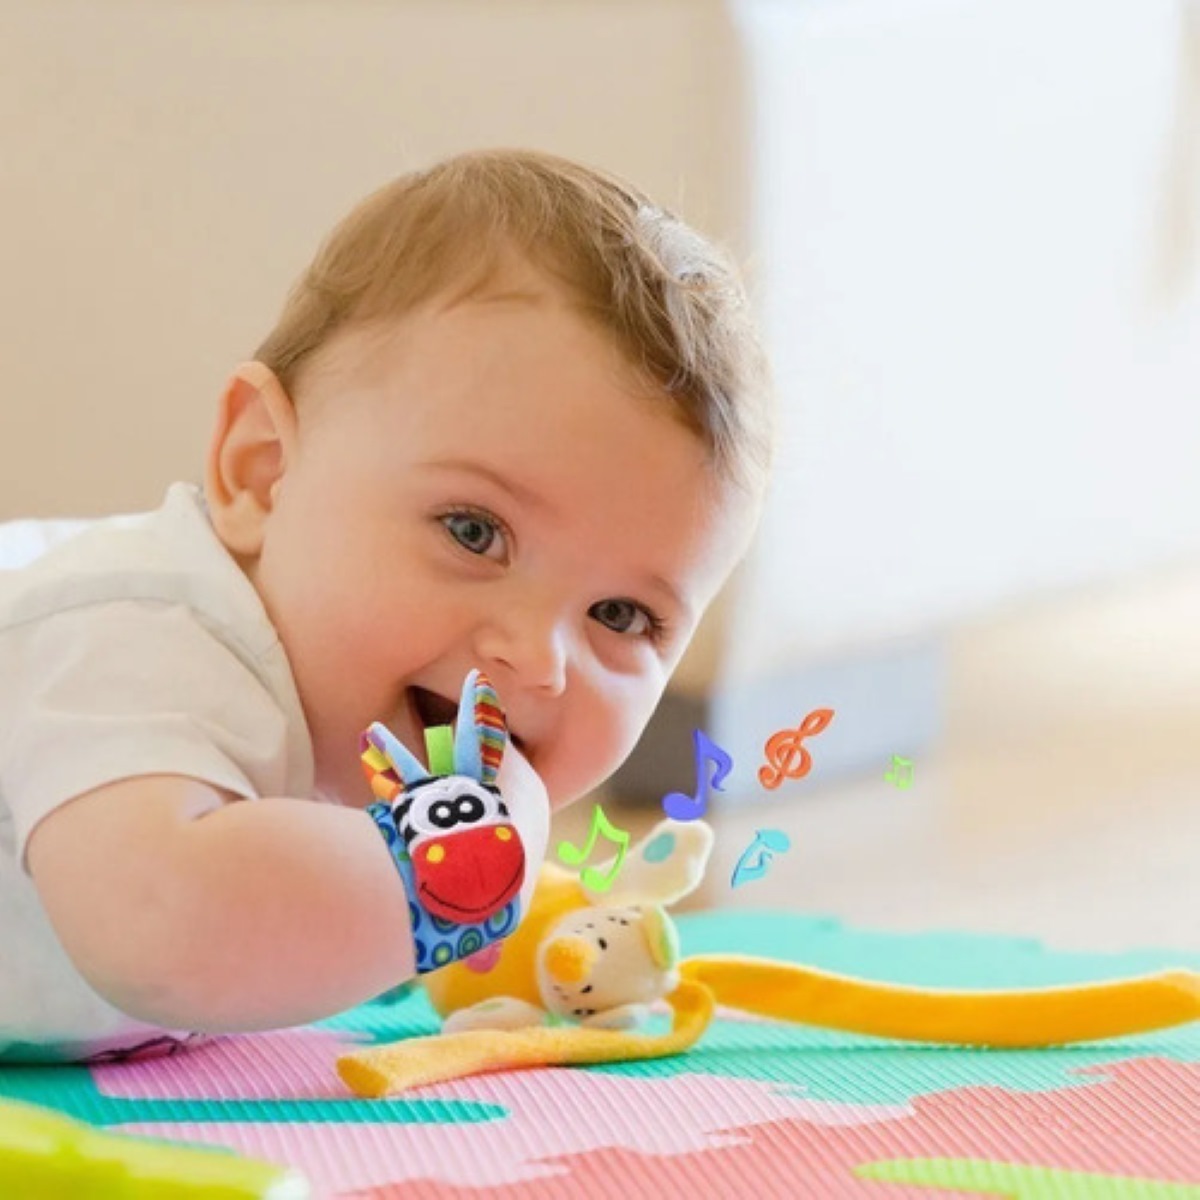 Compre Calcetines De Sonajero Para Bebés, Juguetes De Aprendizaje